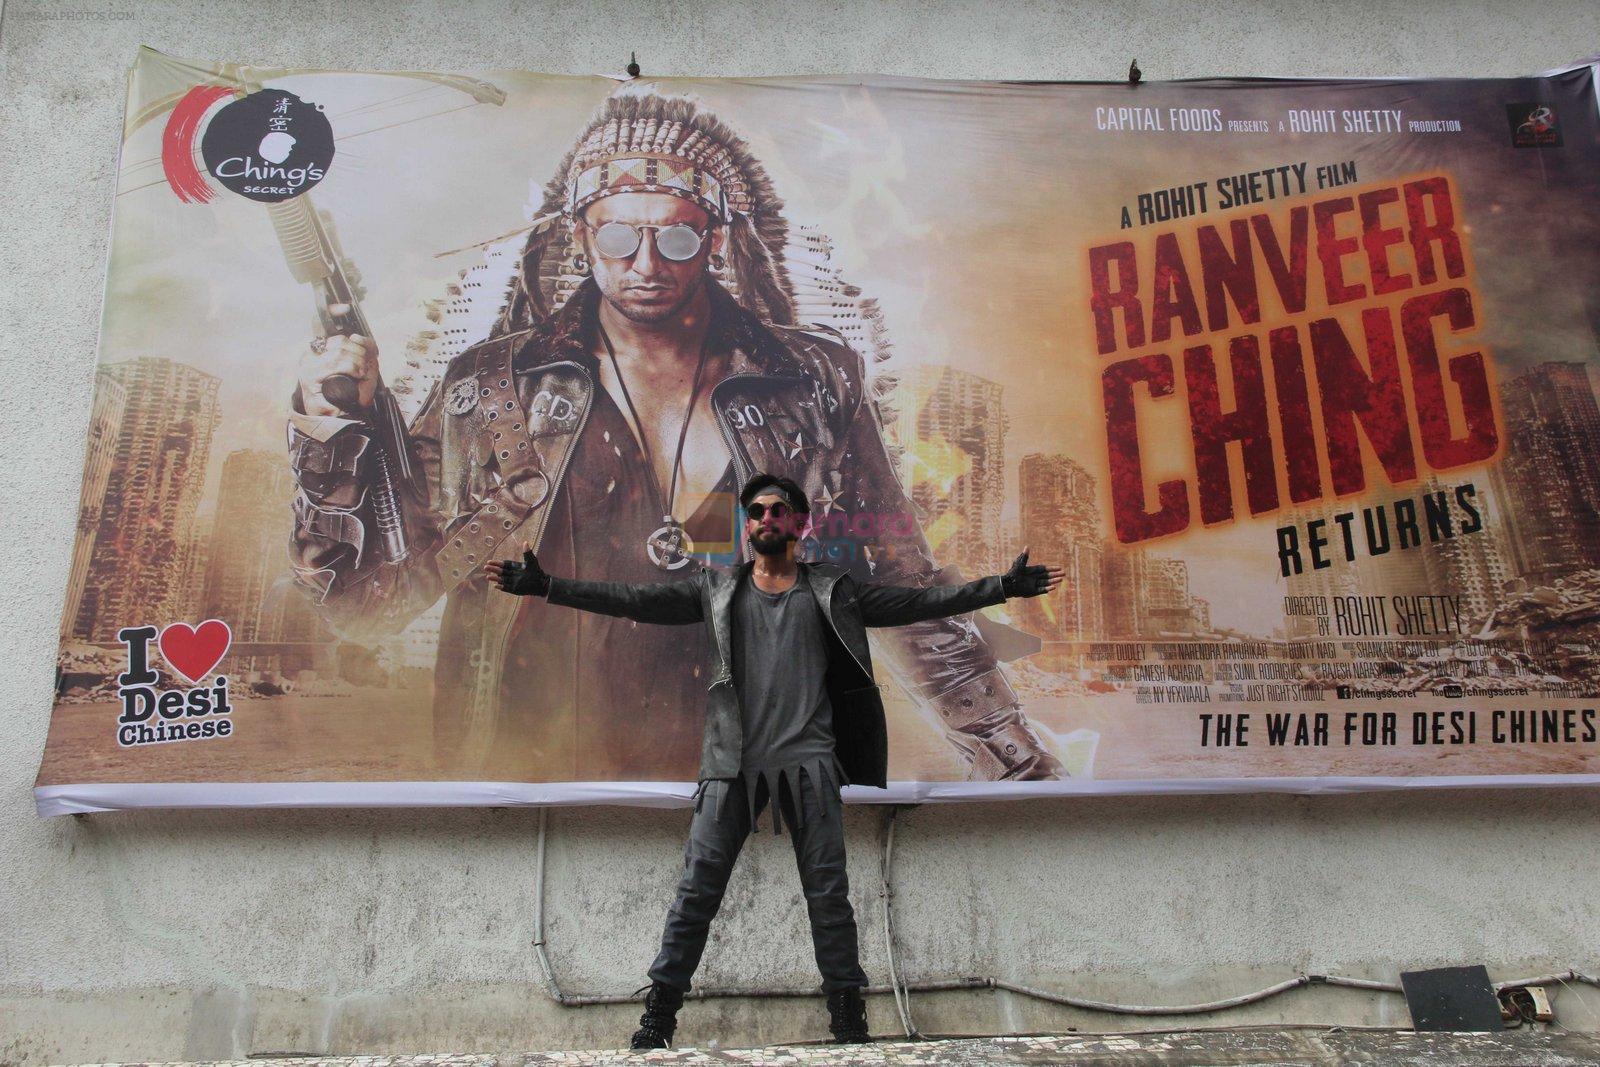 Ranveer Singh promote Ranveer Ching Returns on 19th Aug 2016